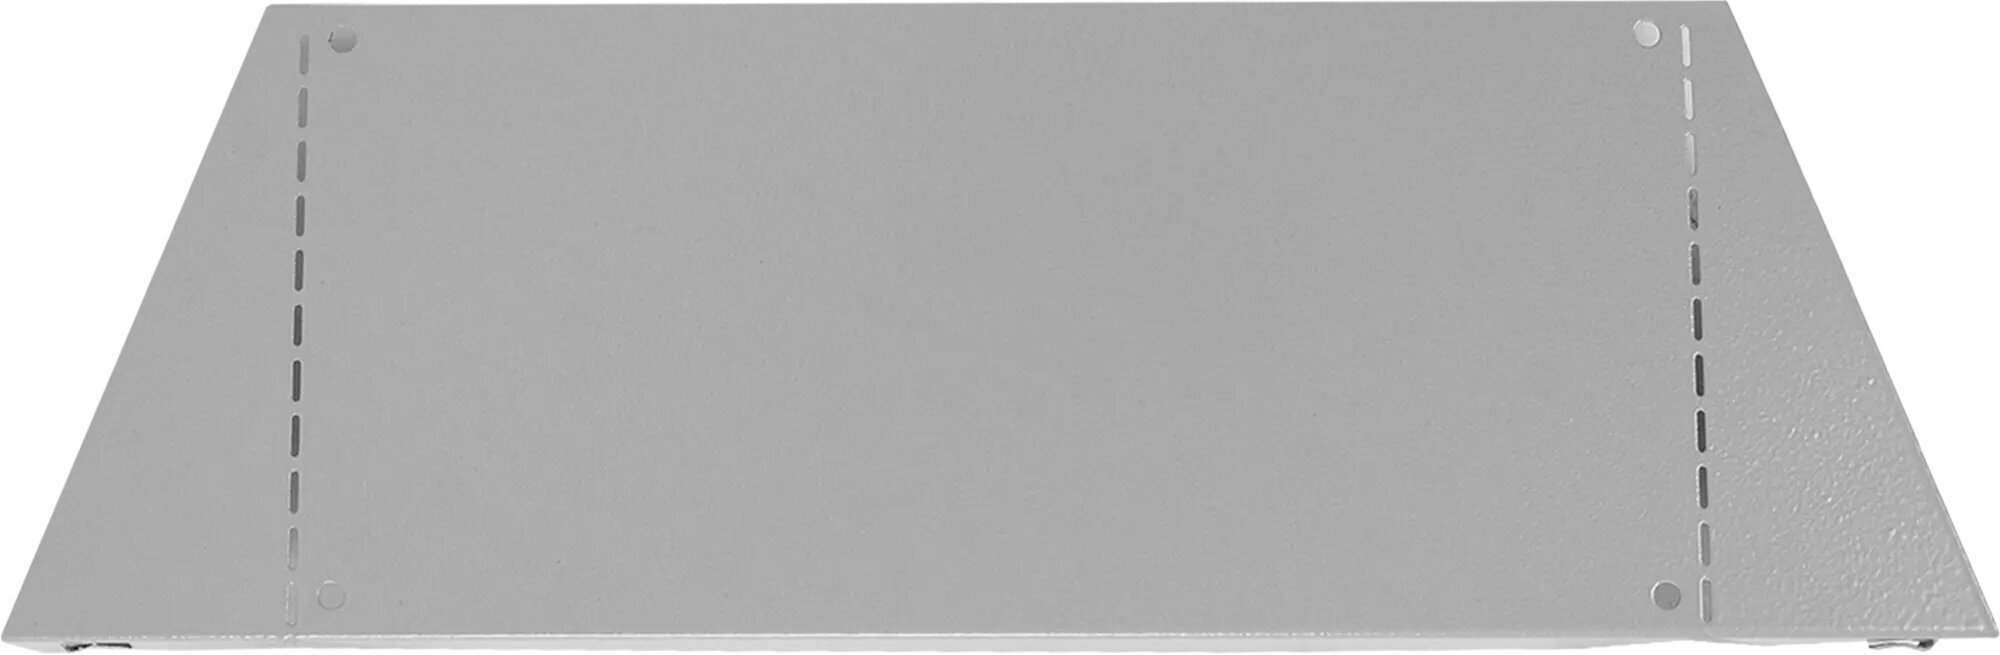 Полка для верстачного экрана Практик SSH малая 7x327x151 сталь цвет серый